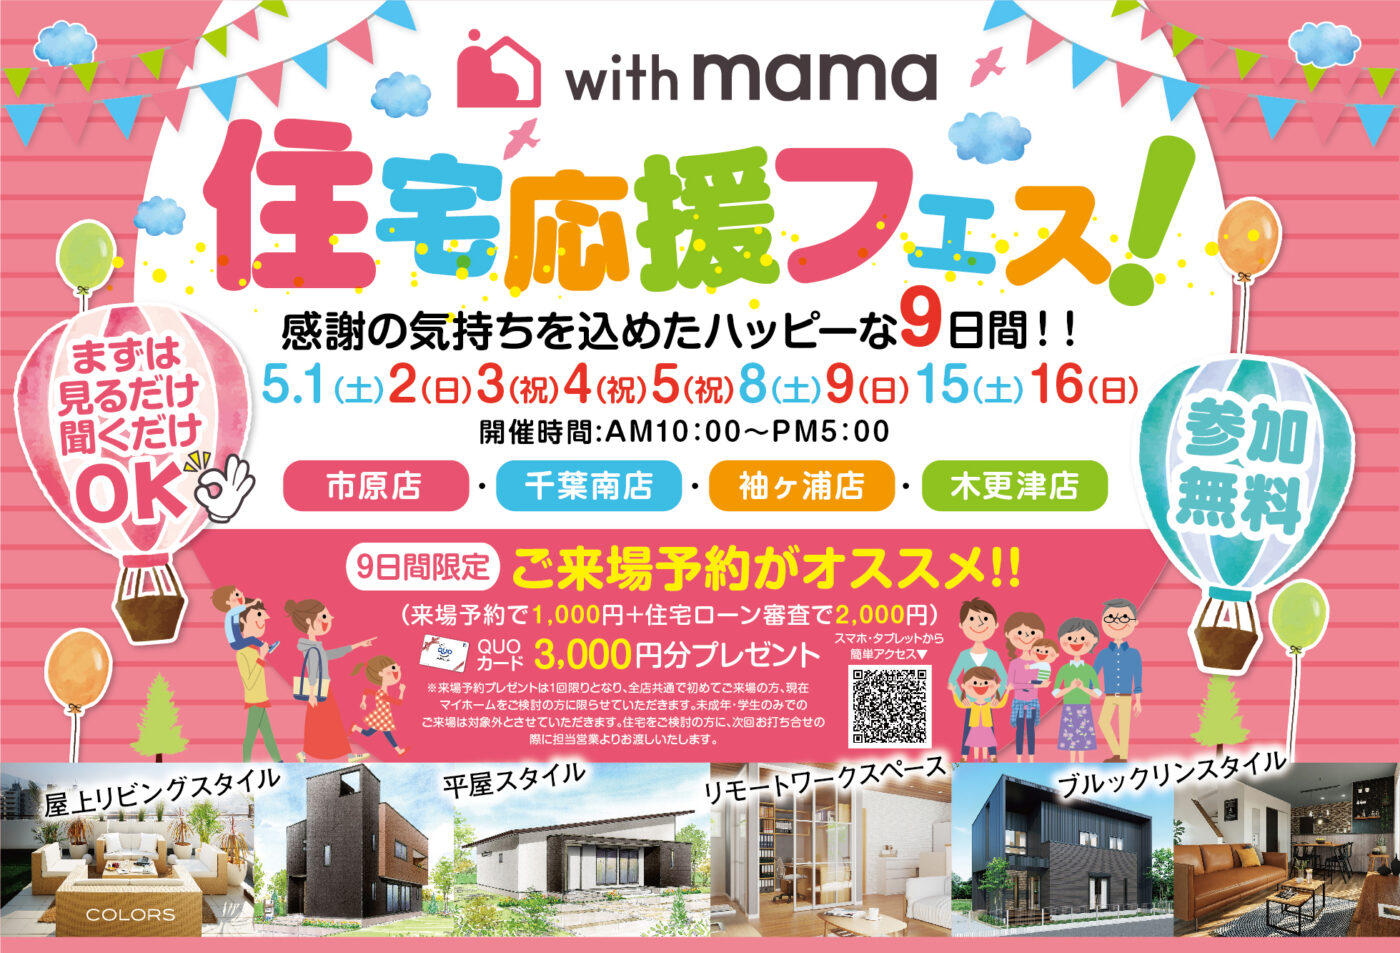 【お知らせ】5月イベント情報♪with mama 住宅応援フェス開催！ アイチャッチ